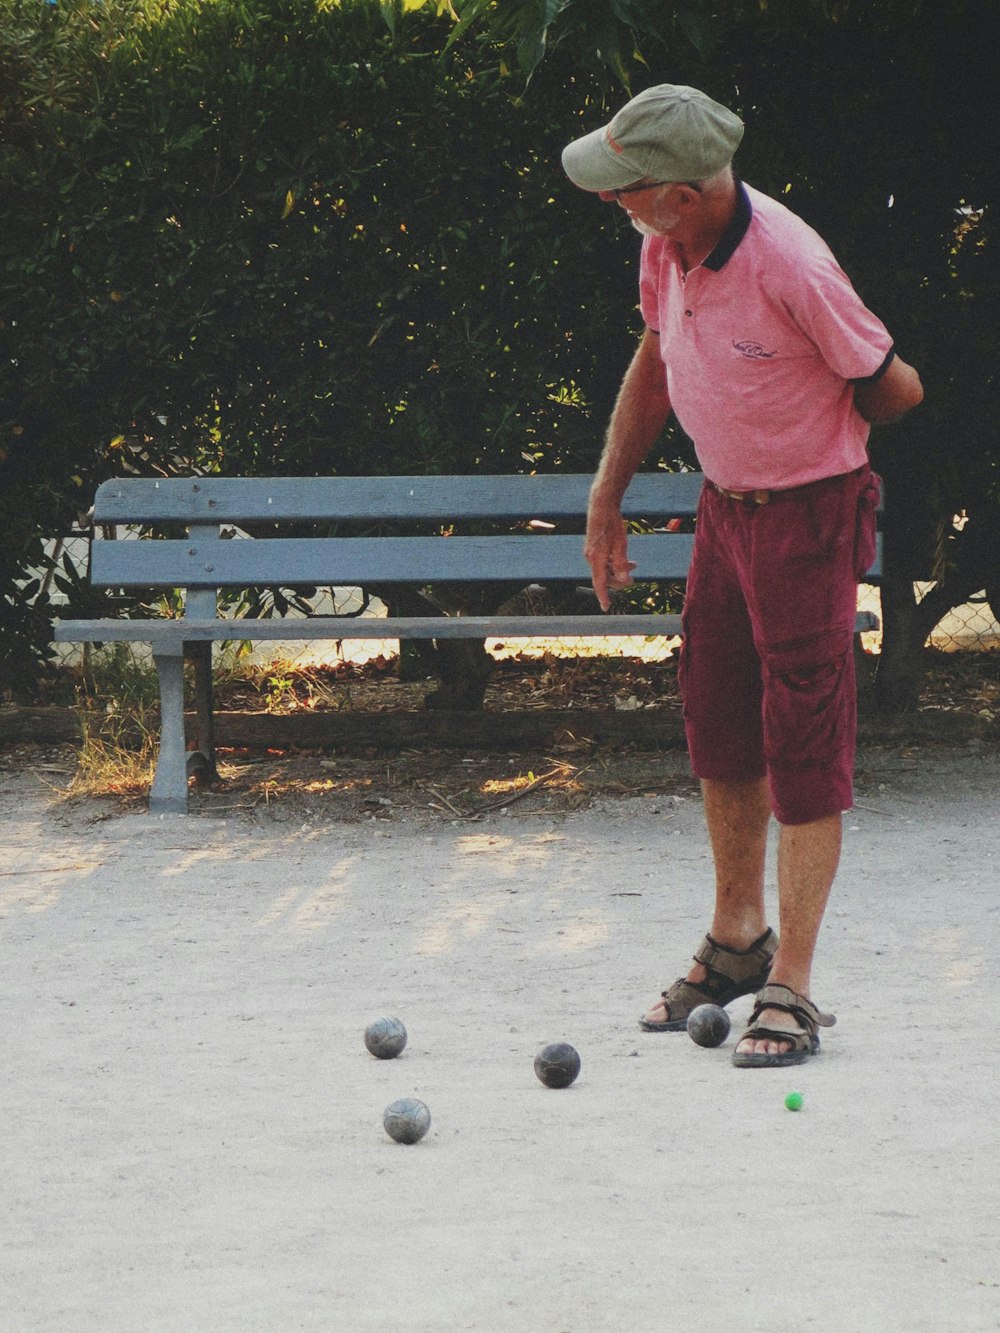 ピンクのシャツを着た男がボールで遊んでいる